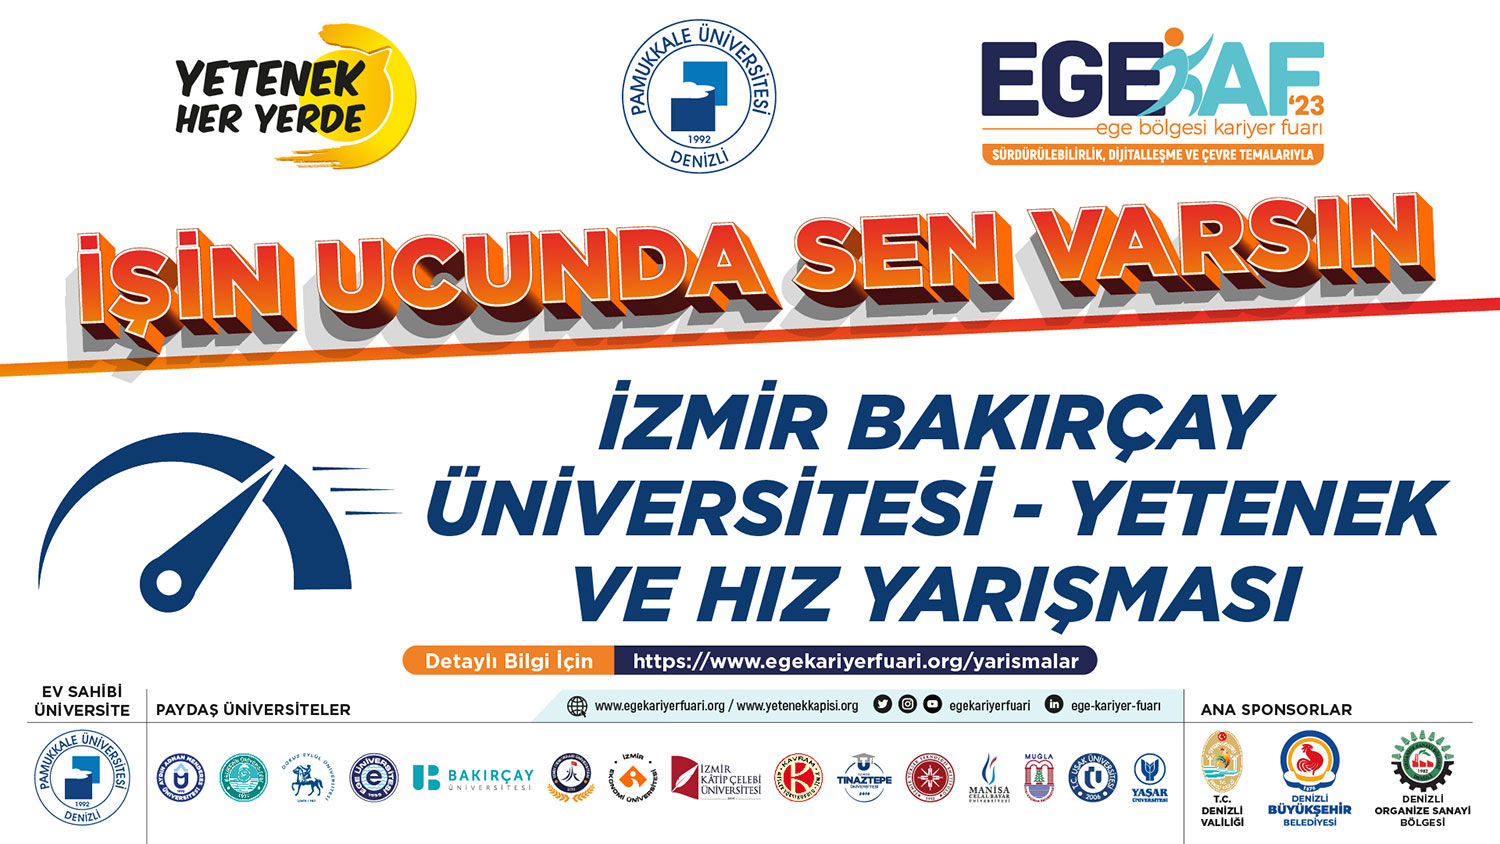 İzmir Bakırçay Üniversitesi - Yetenek ve Hız Yarışması